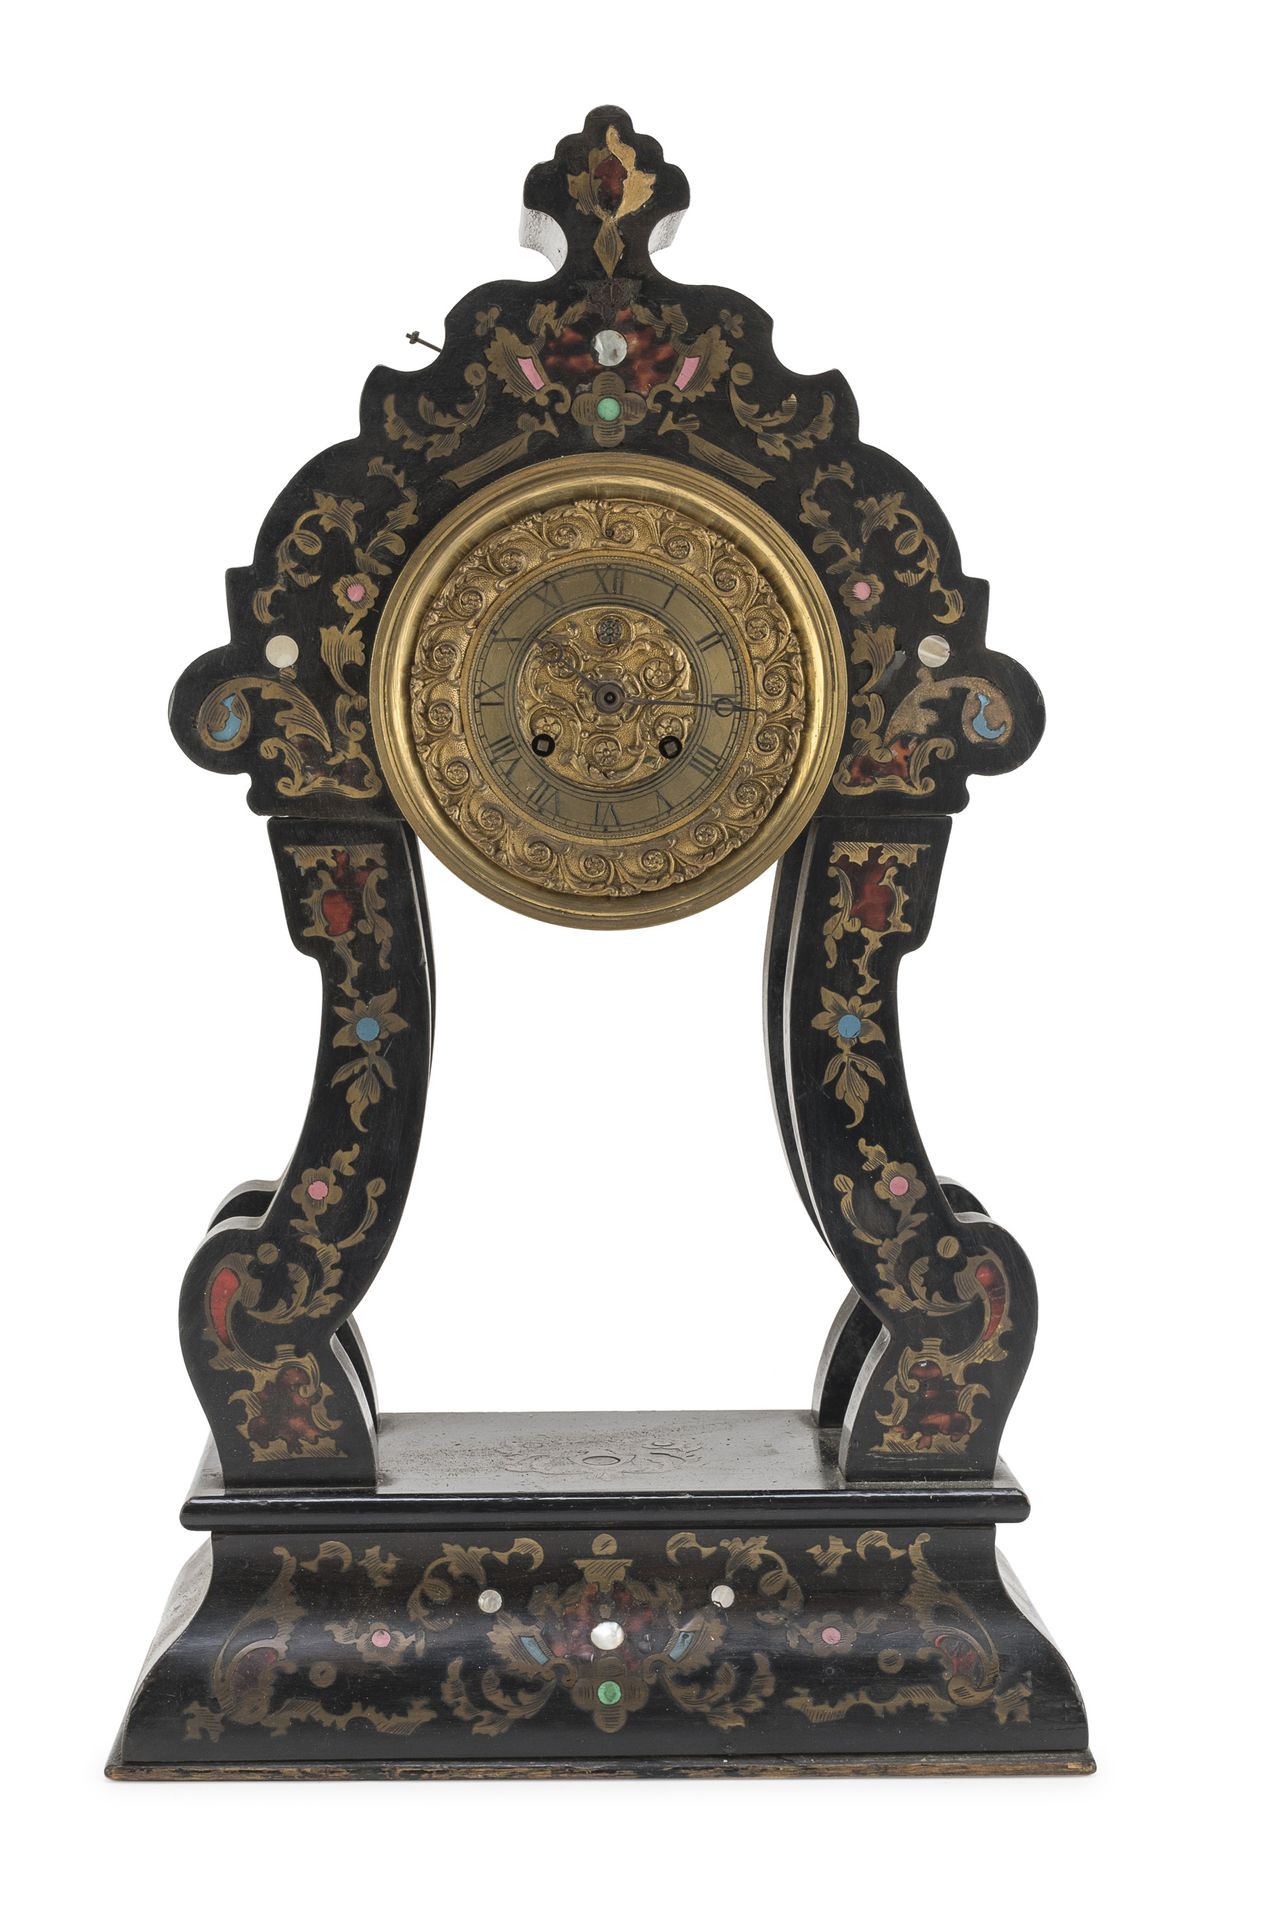 Null 乌木台钟，法国，19世纪

完全镶嵌在镀金金属、玳瑁、珍珠母和宝石上的植物图案。四个成型的立柱，凿刻的金属表盘。

尺寸为47 x 28 x 13厘米&hellip;